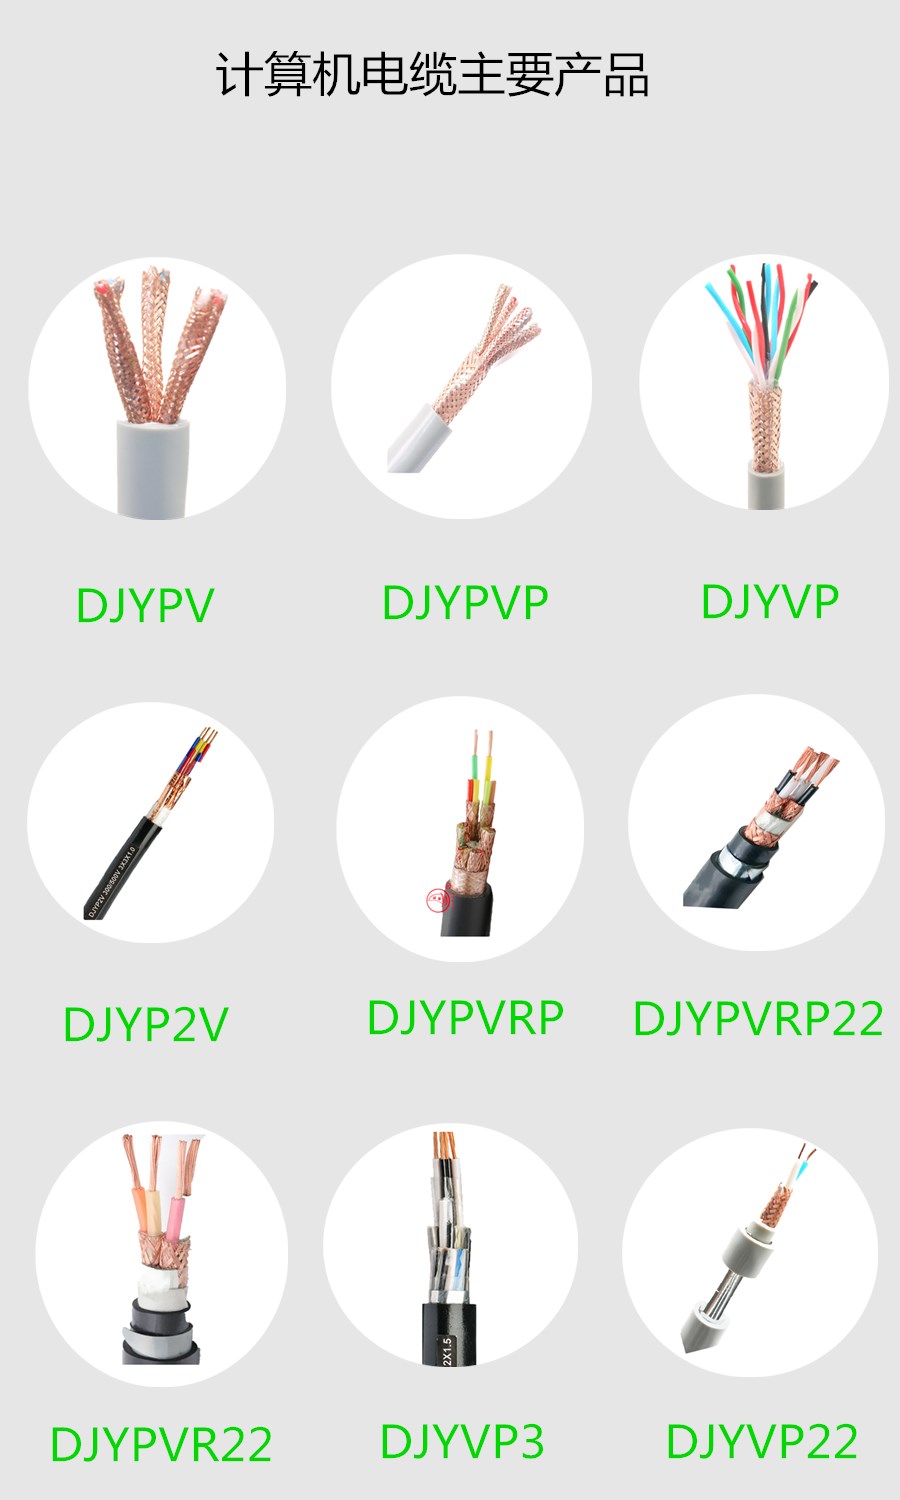 DJYPVP 计算机电缆 屏蔽电缆 上海起帆 质量保证 国标产品2.jpg